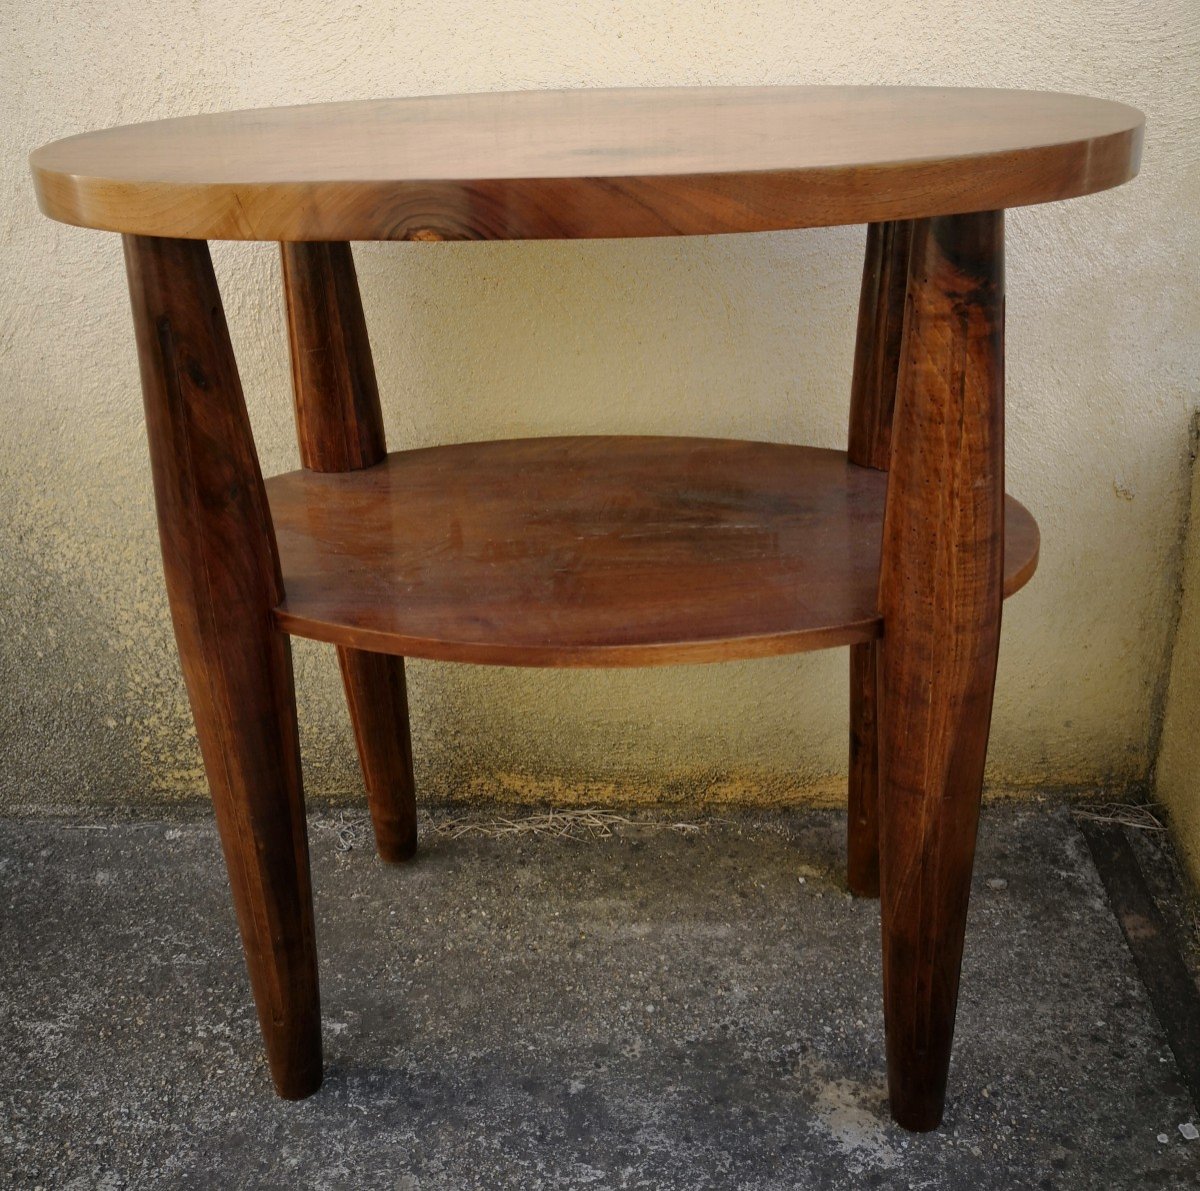 Table basse ovale en chêne foncé dessus céramique brune oxydée